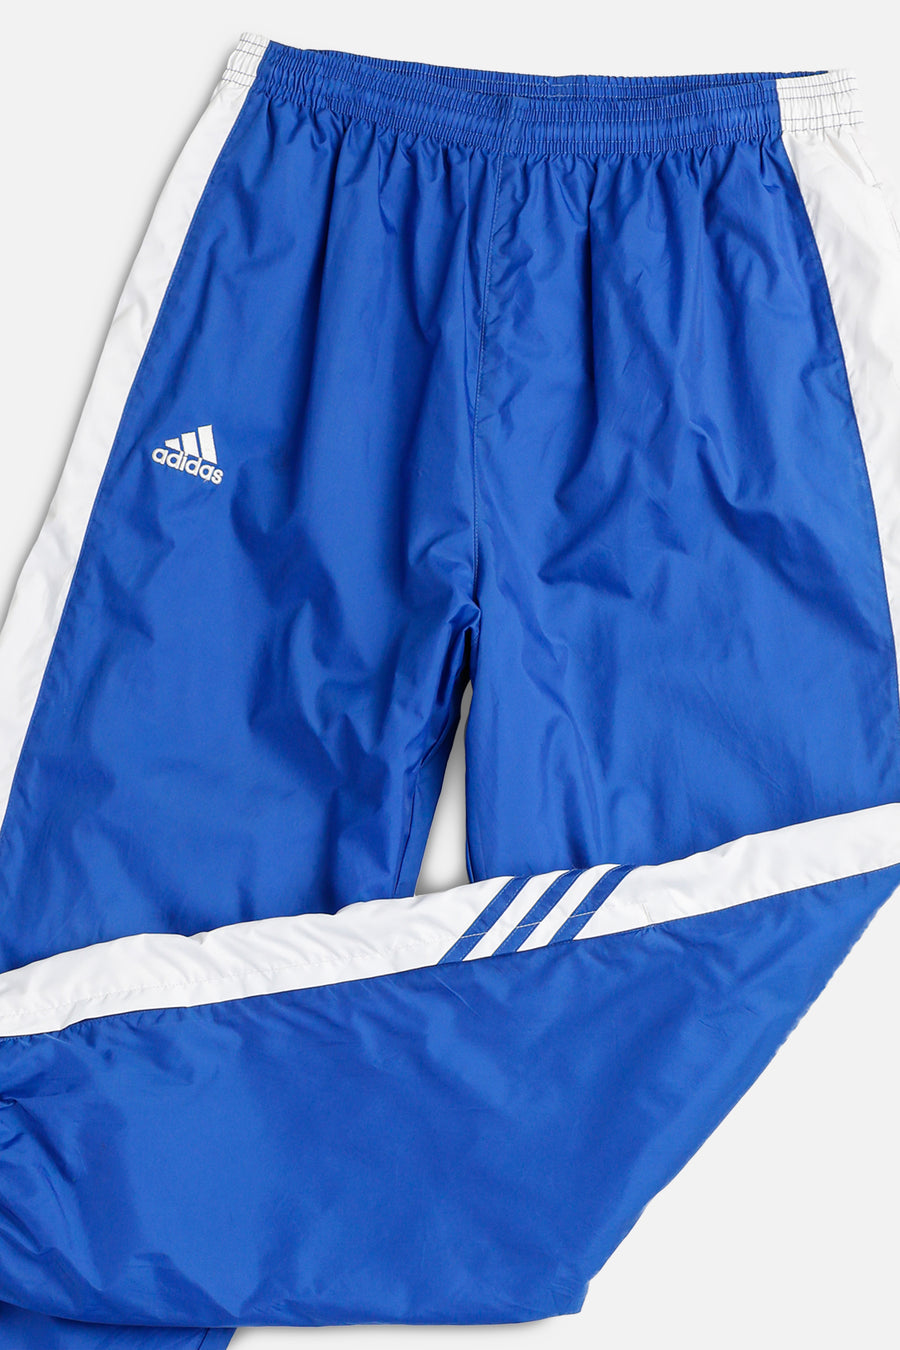 Vintage Adidas Windbreaker Pants - M